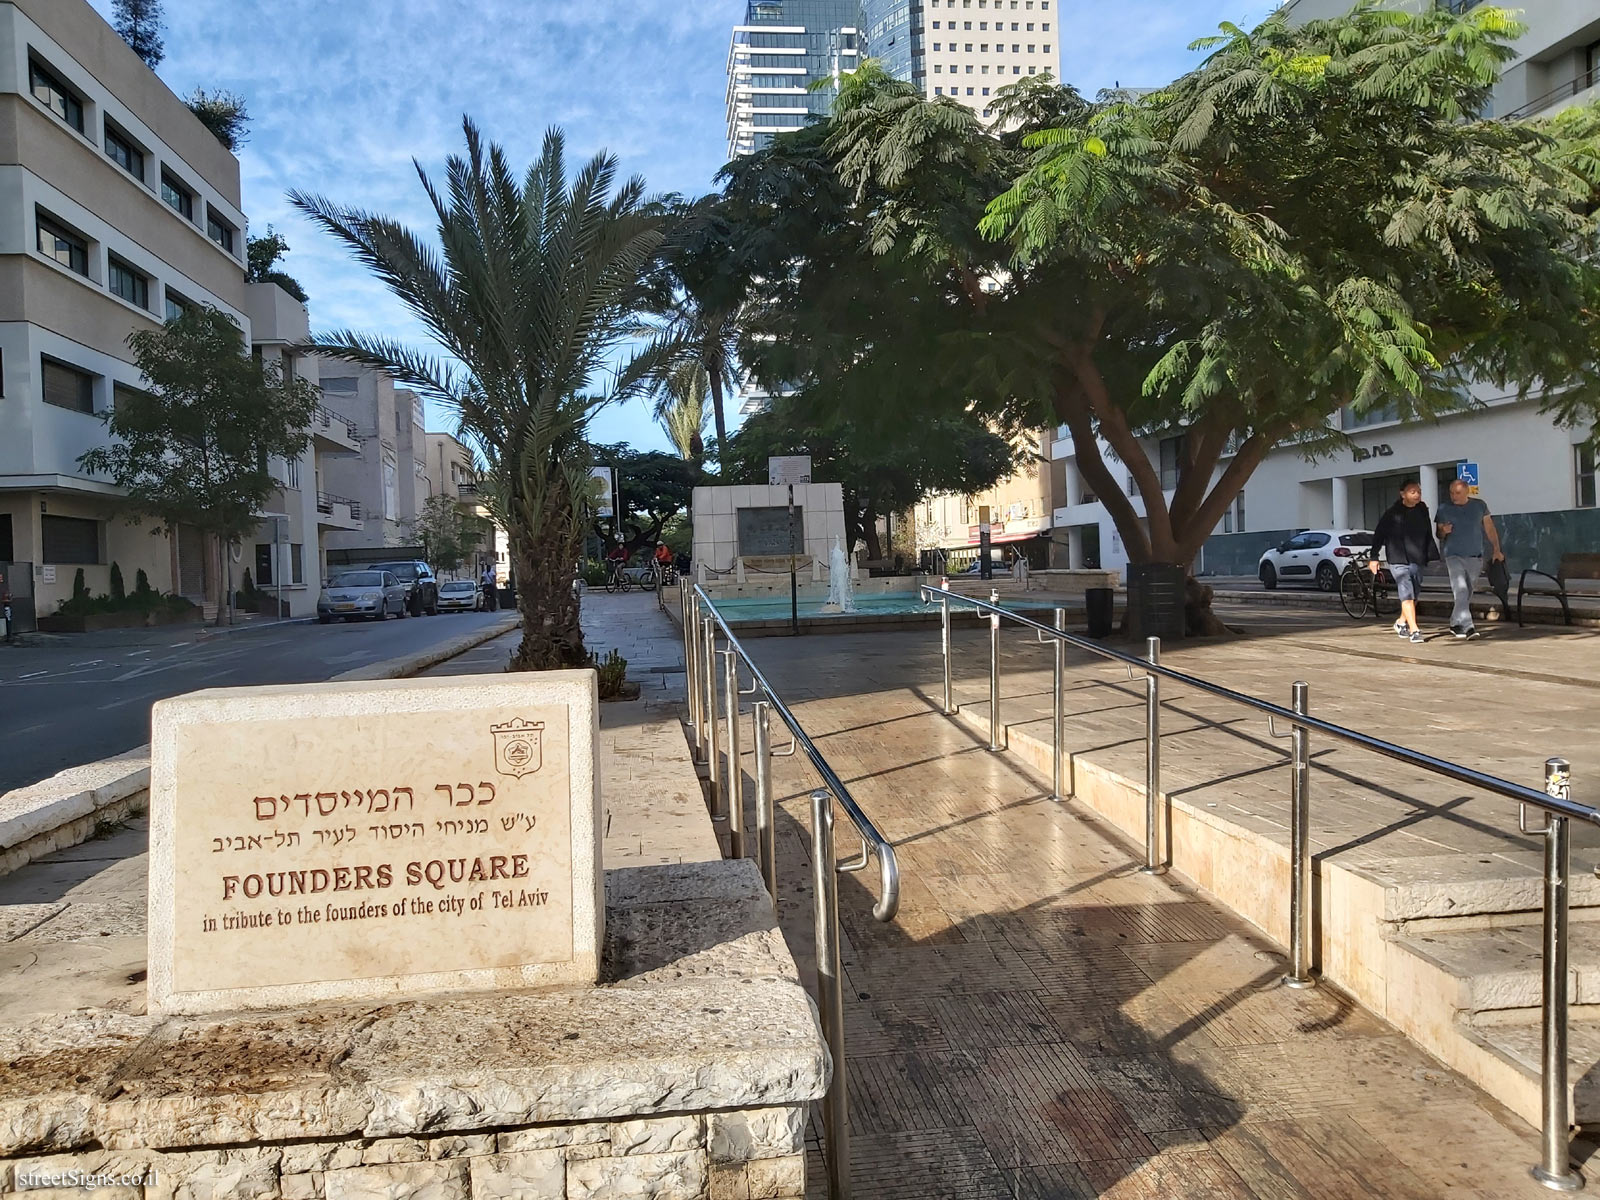 Tel Aviv - Founders Square - Rothschild Blvd